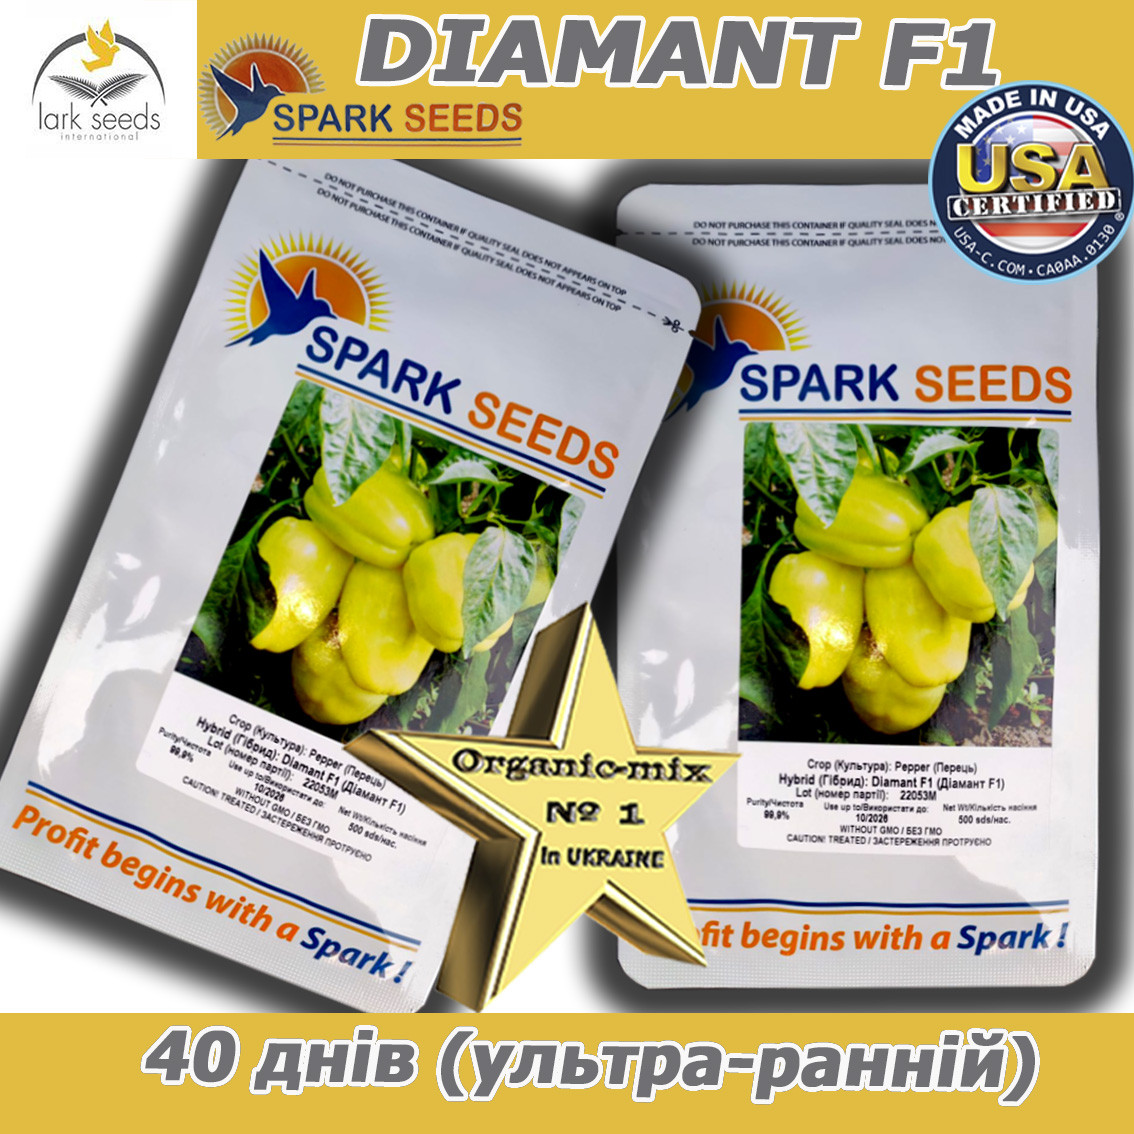 Перець солодкий, ранній ДИАМАНТ F1 / DIAMANT F1, проф. пакет 500 насінин ТМ Sark Seeds(США)